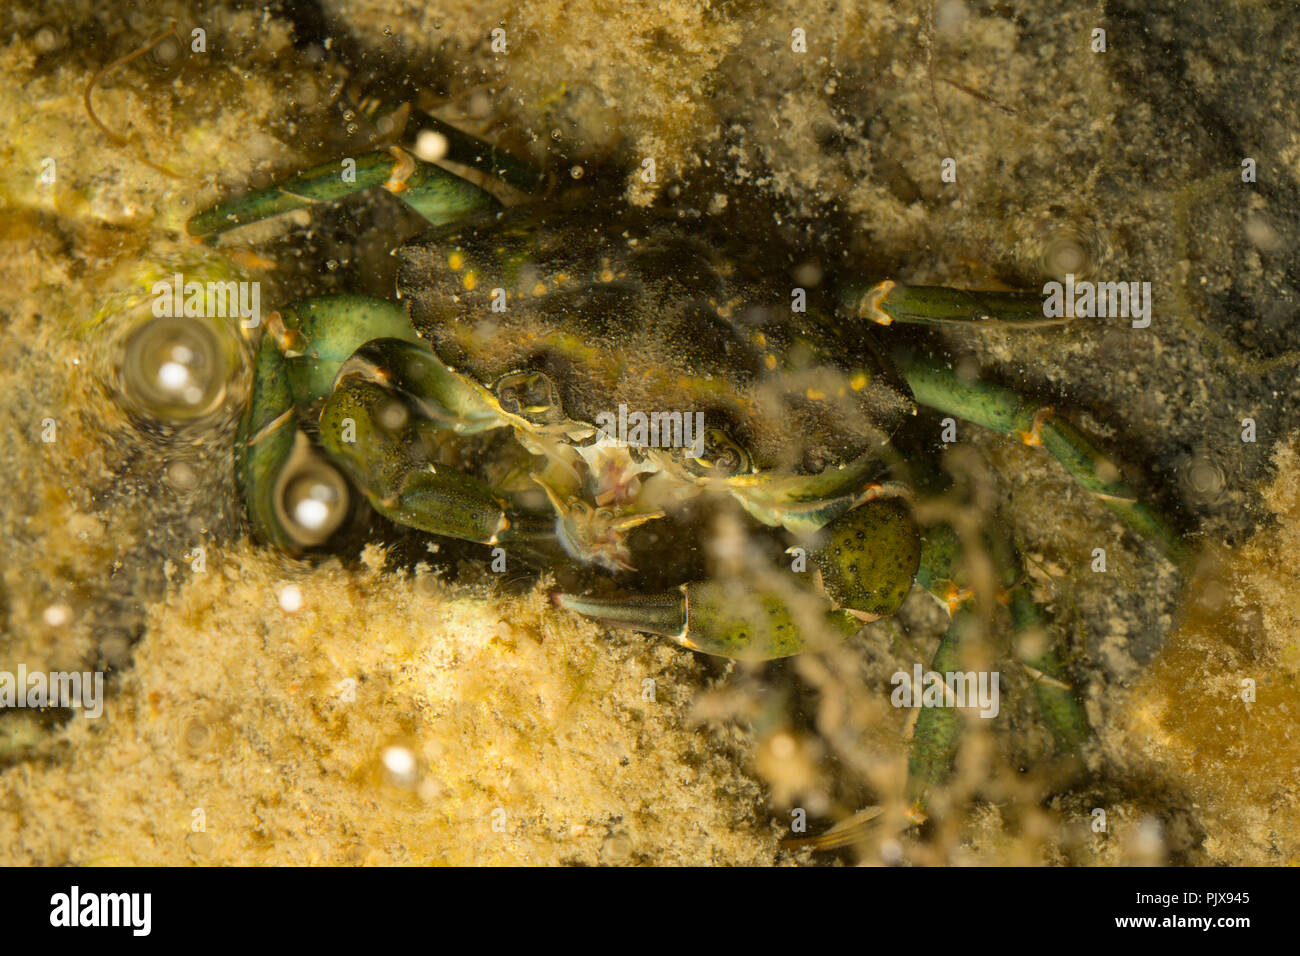 Un crabe vert, Carcinus maenas, photographié de nuit dans une alimentation rockpool sur ragworm king qu'il avait utilisé comme appât de pêche. Dorset Banque D'Images